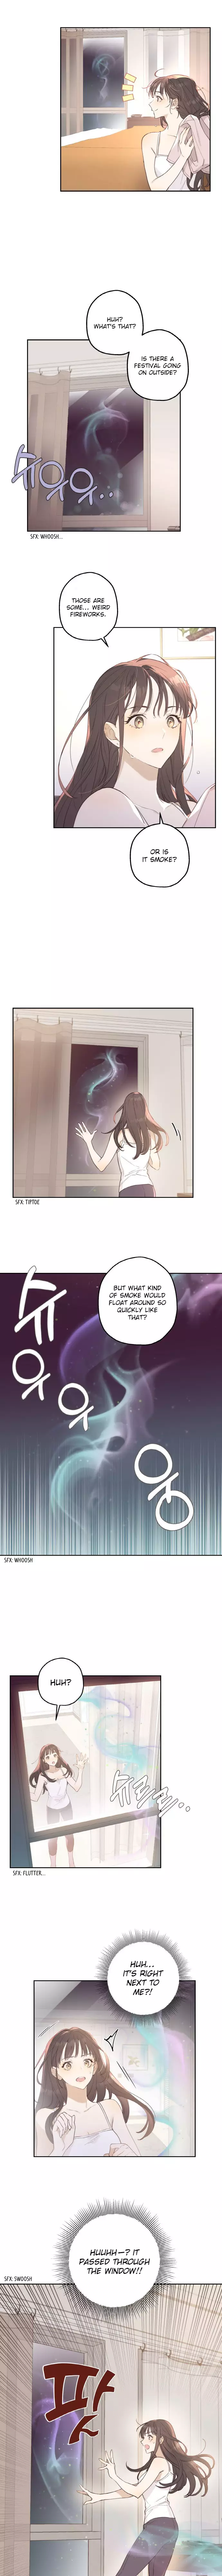 Onsaemiro - 1 page 10